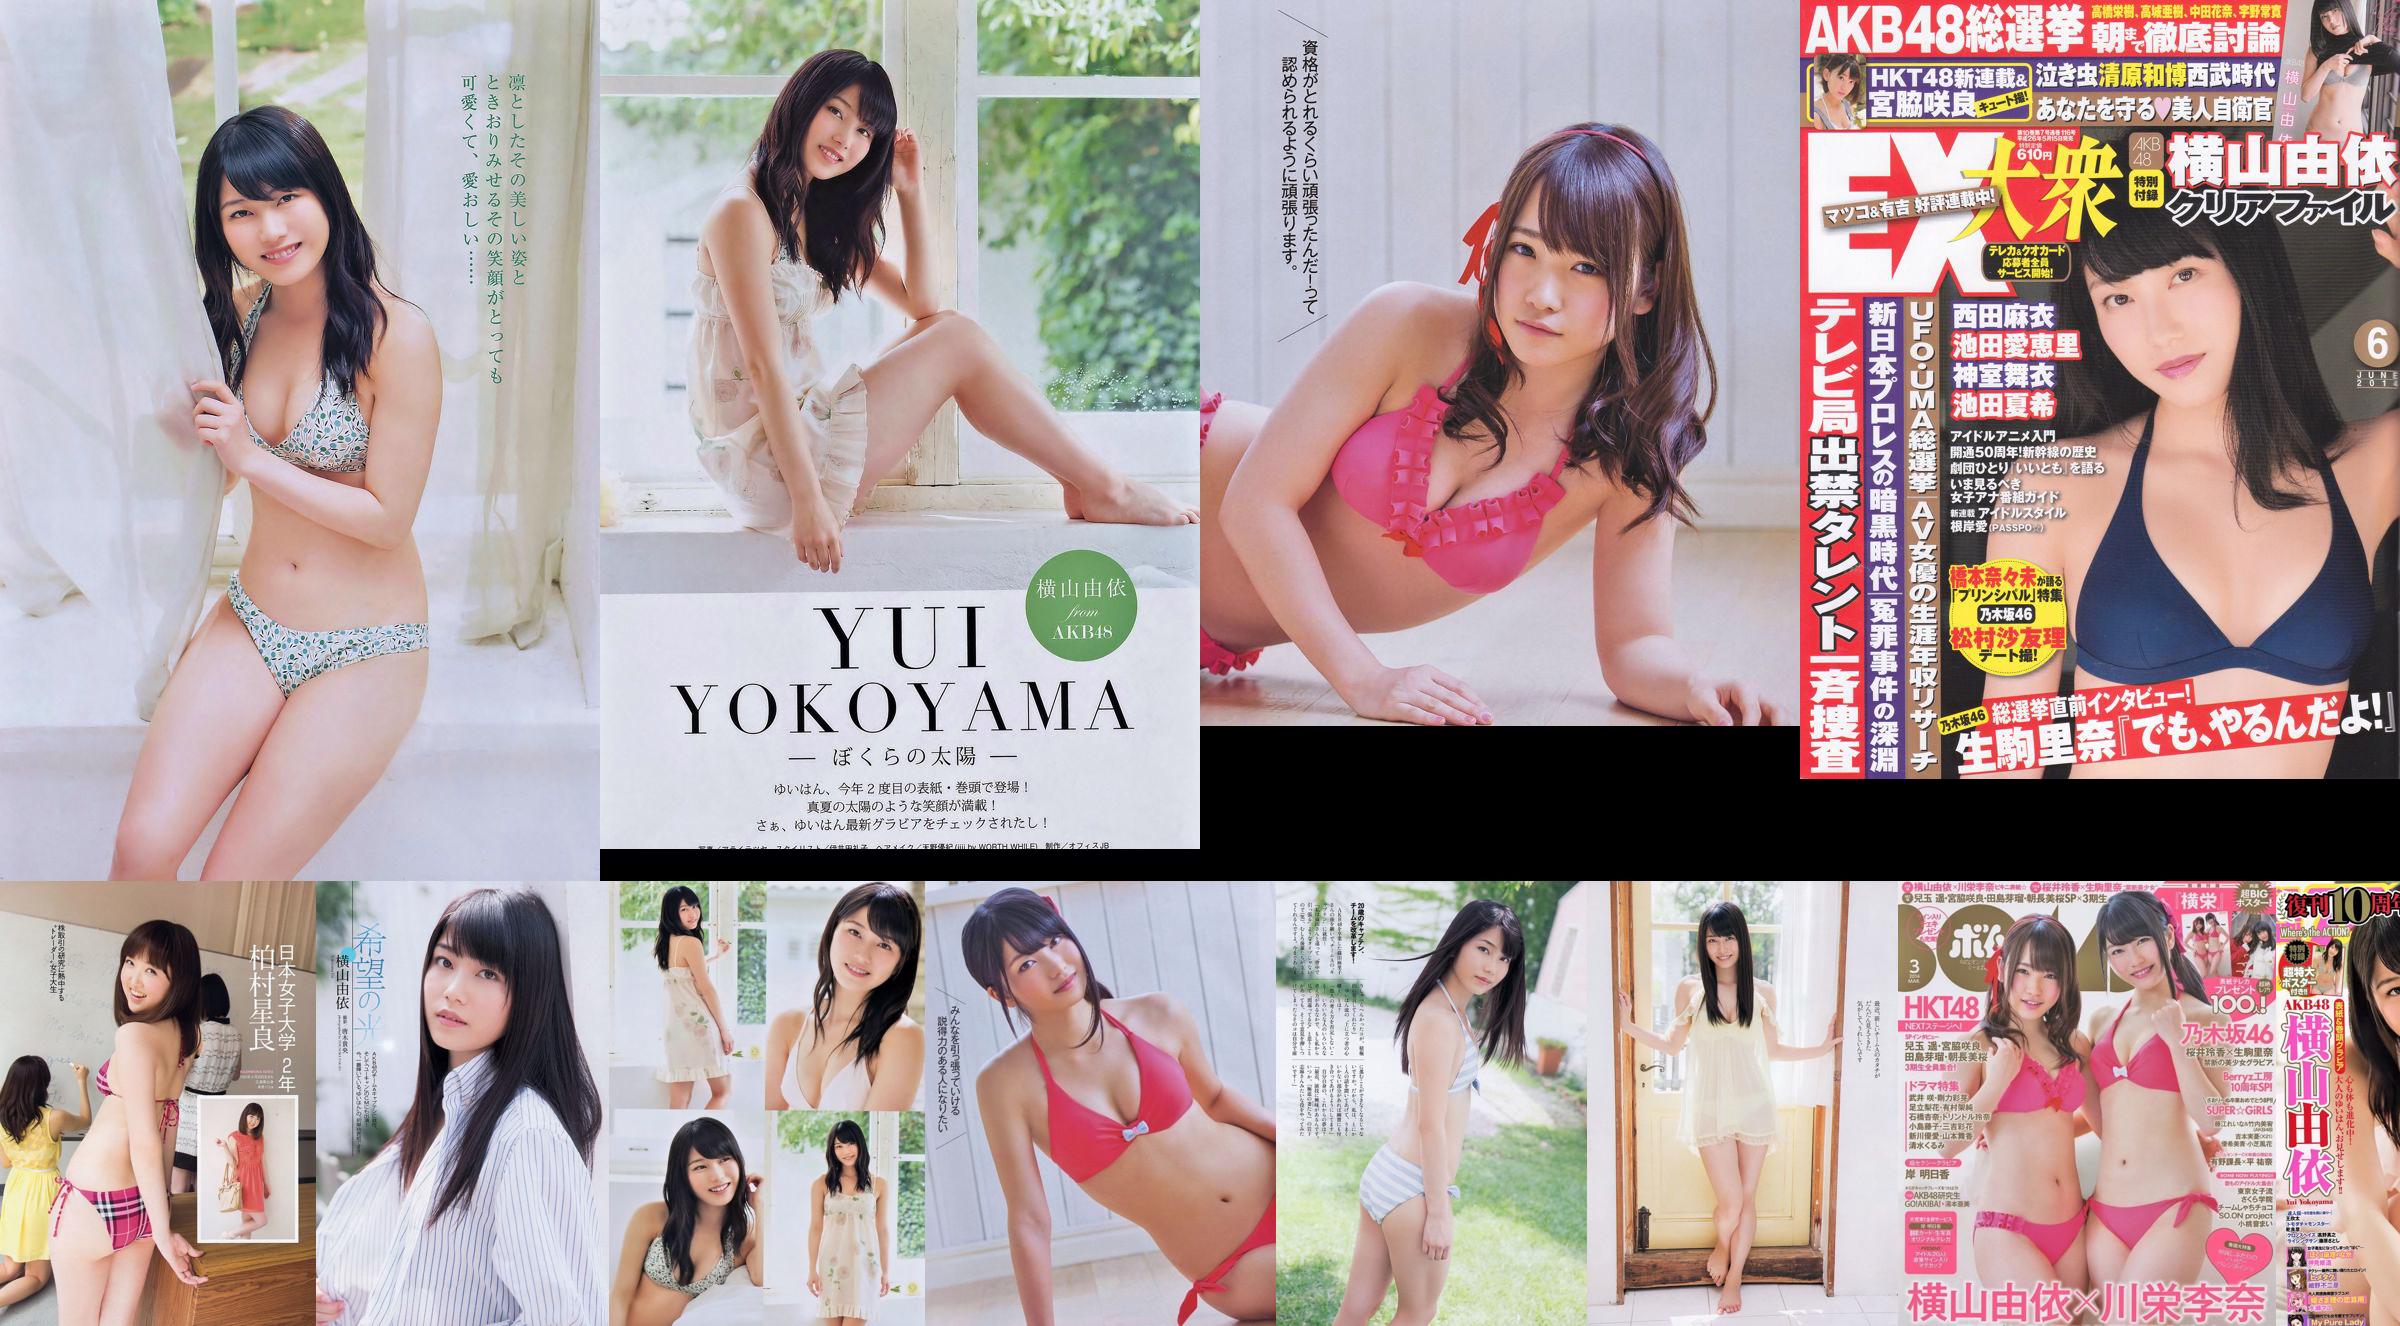 Momoiro Clover Z Yui Yokoyama Yua Shinkawa Mio Uema Anri Sugihara Kumi Yagami [Weekly Playboy] 2013 No.20 Photo Moshi No.1db3e6 Página 10